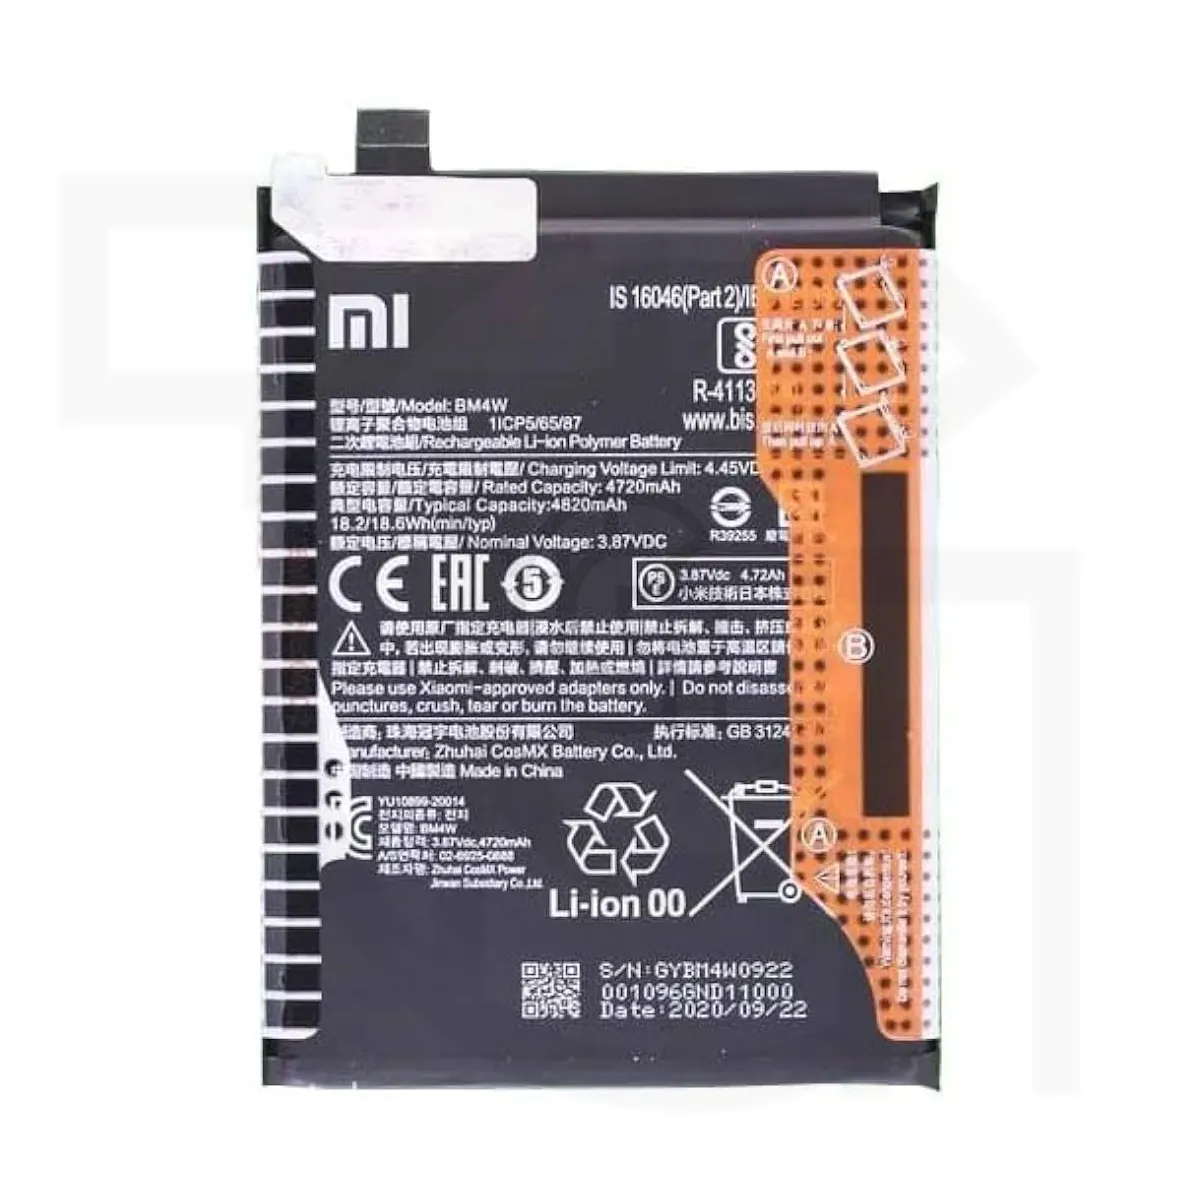 باتری شیائومی Xiaomi BM4W